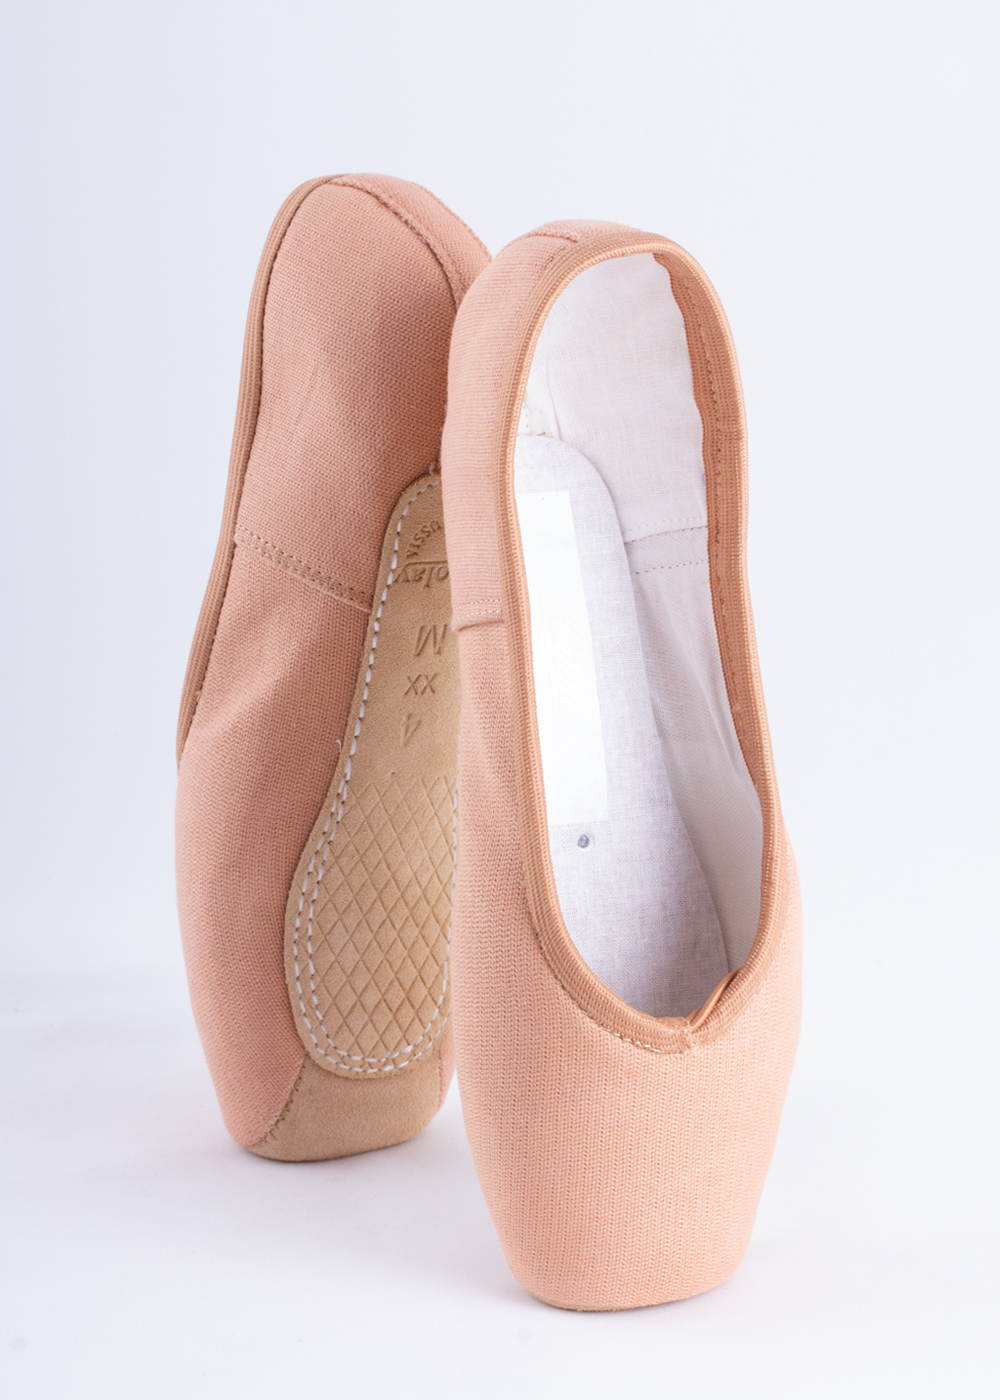 Satén rosa Grishko 2007 Demi Pointe Shoes-diversos tamaños y anchos 